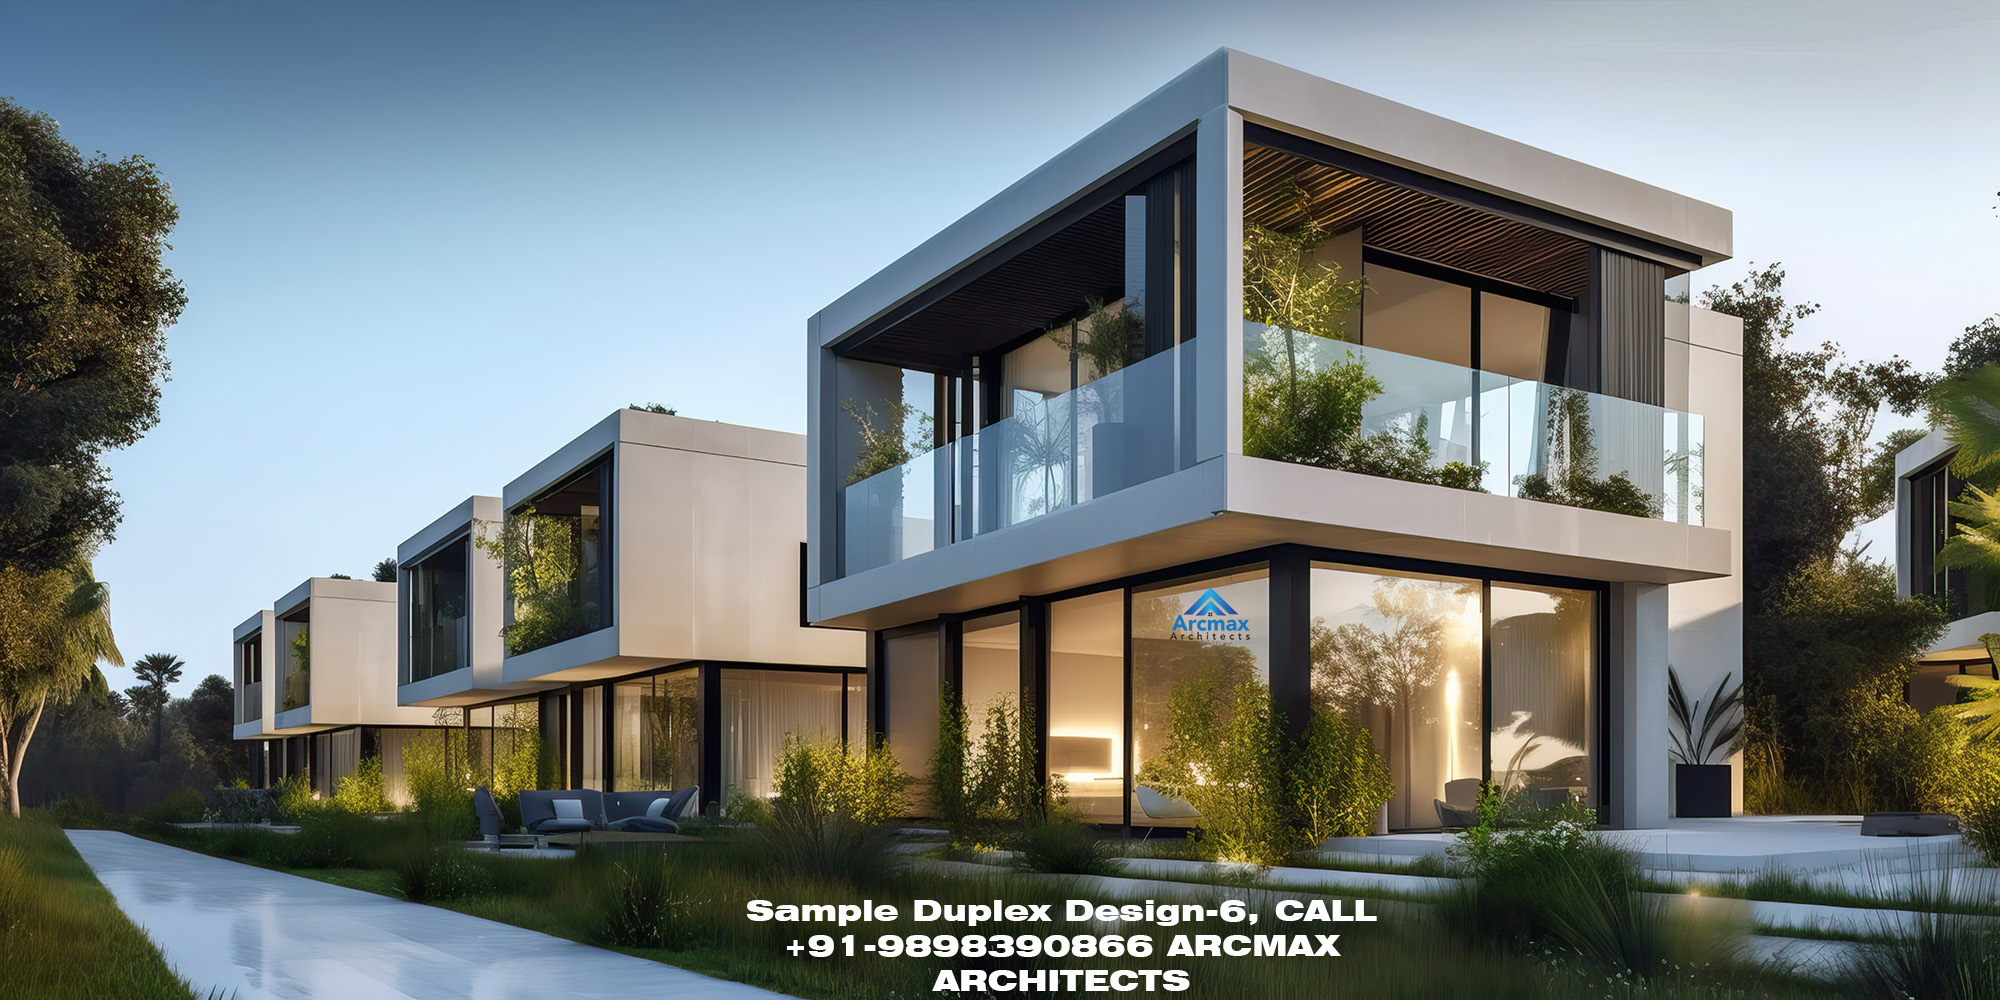 Sample Duplex Design-6